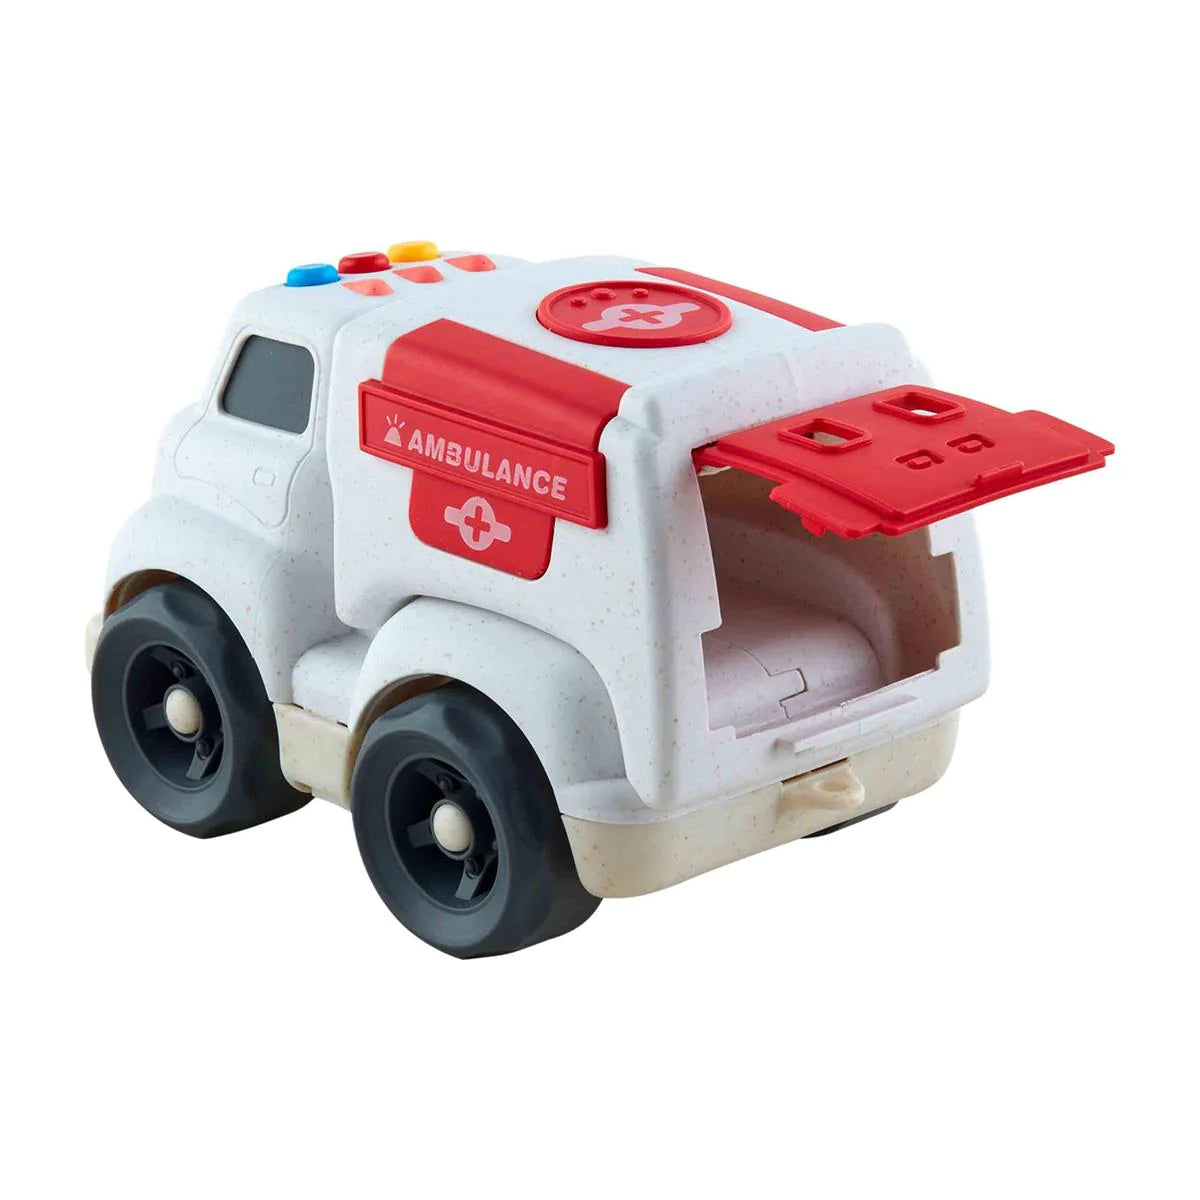 Emergency Vehicle Toy